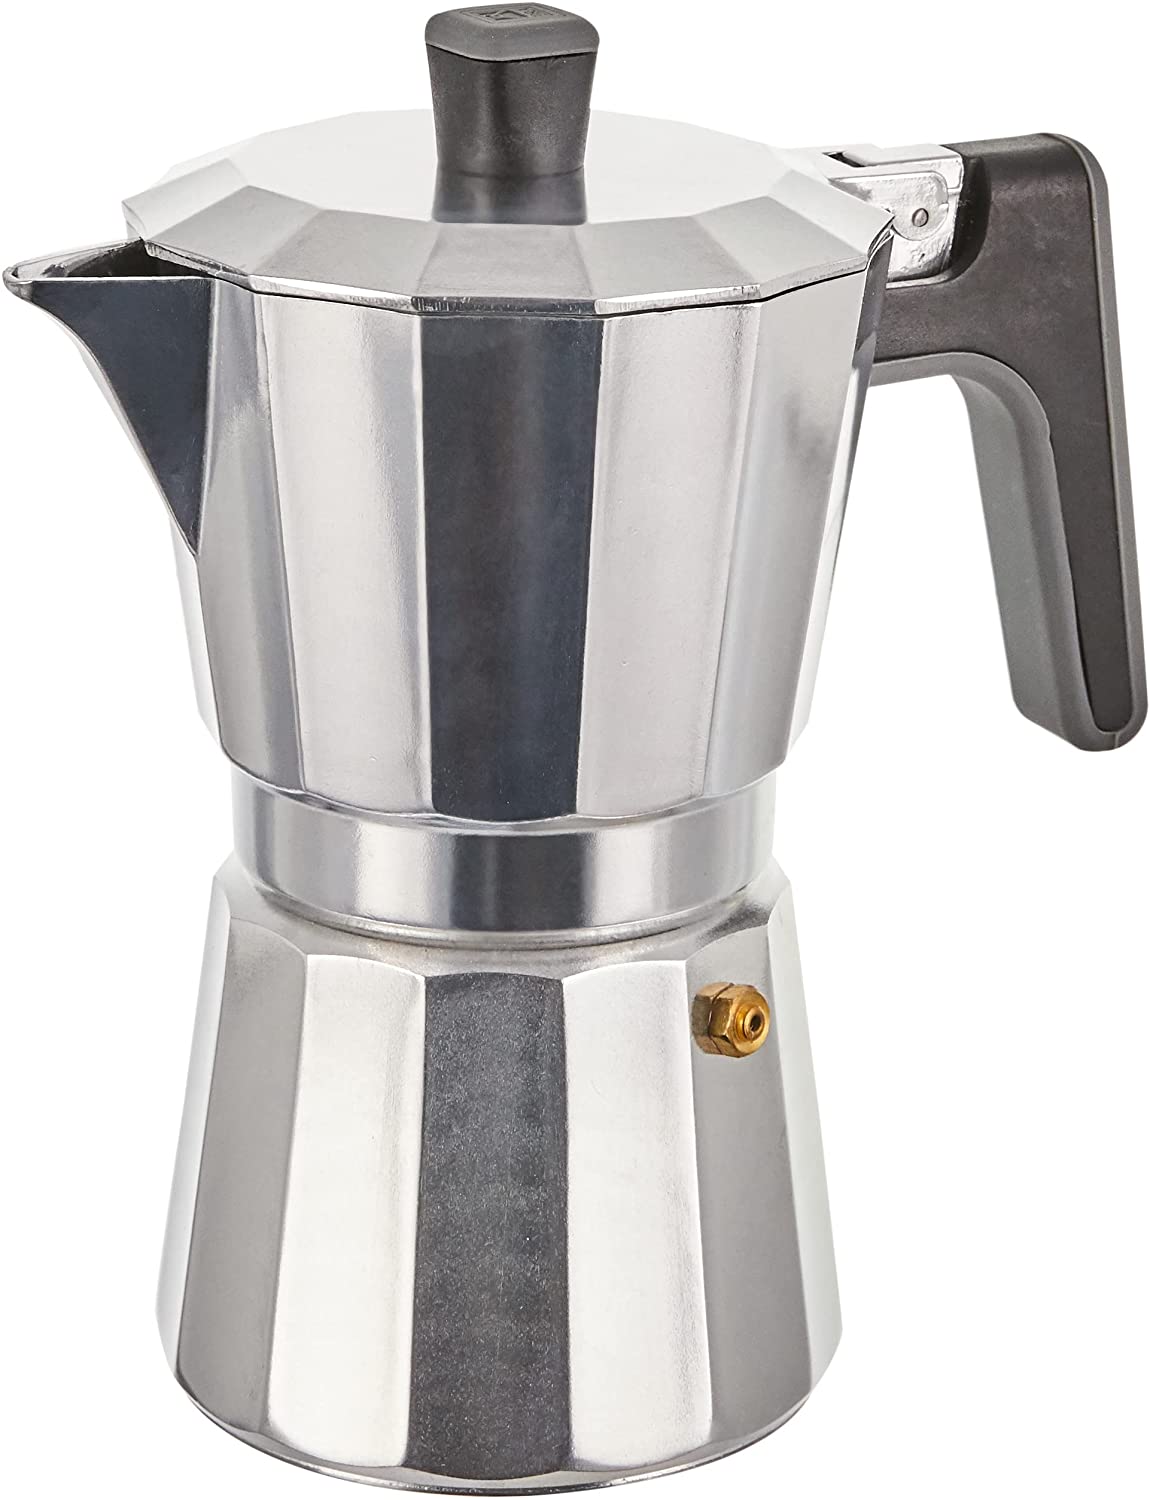 BRA Perfecta Italian Induction Coffee Maker, Aluminium, 6 Cup Capacity, Silver